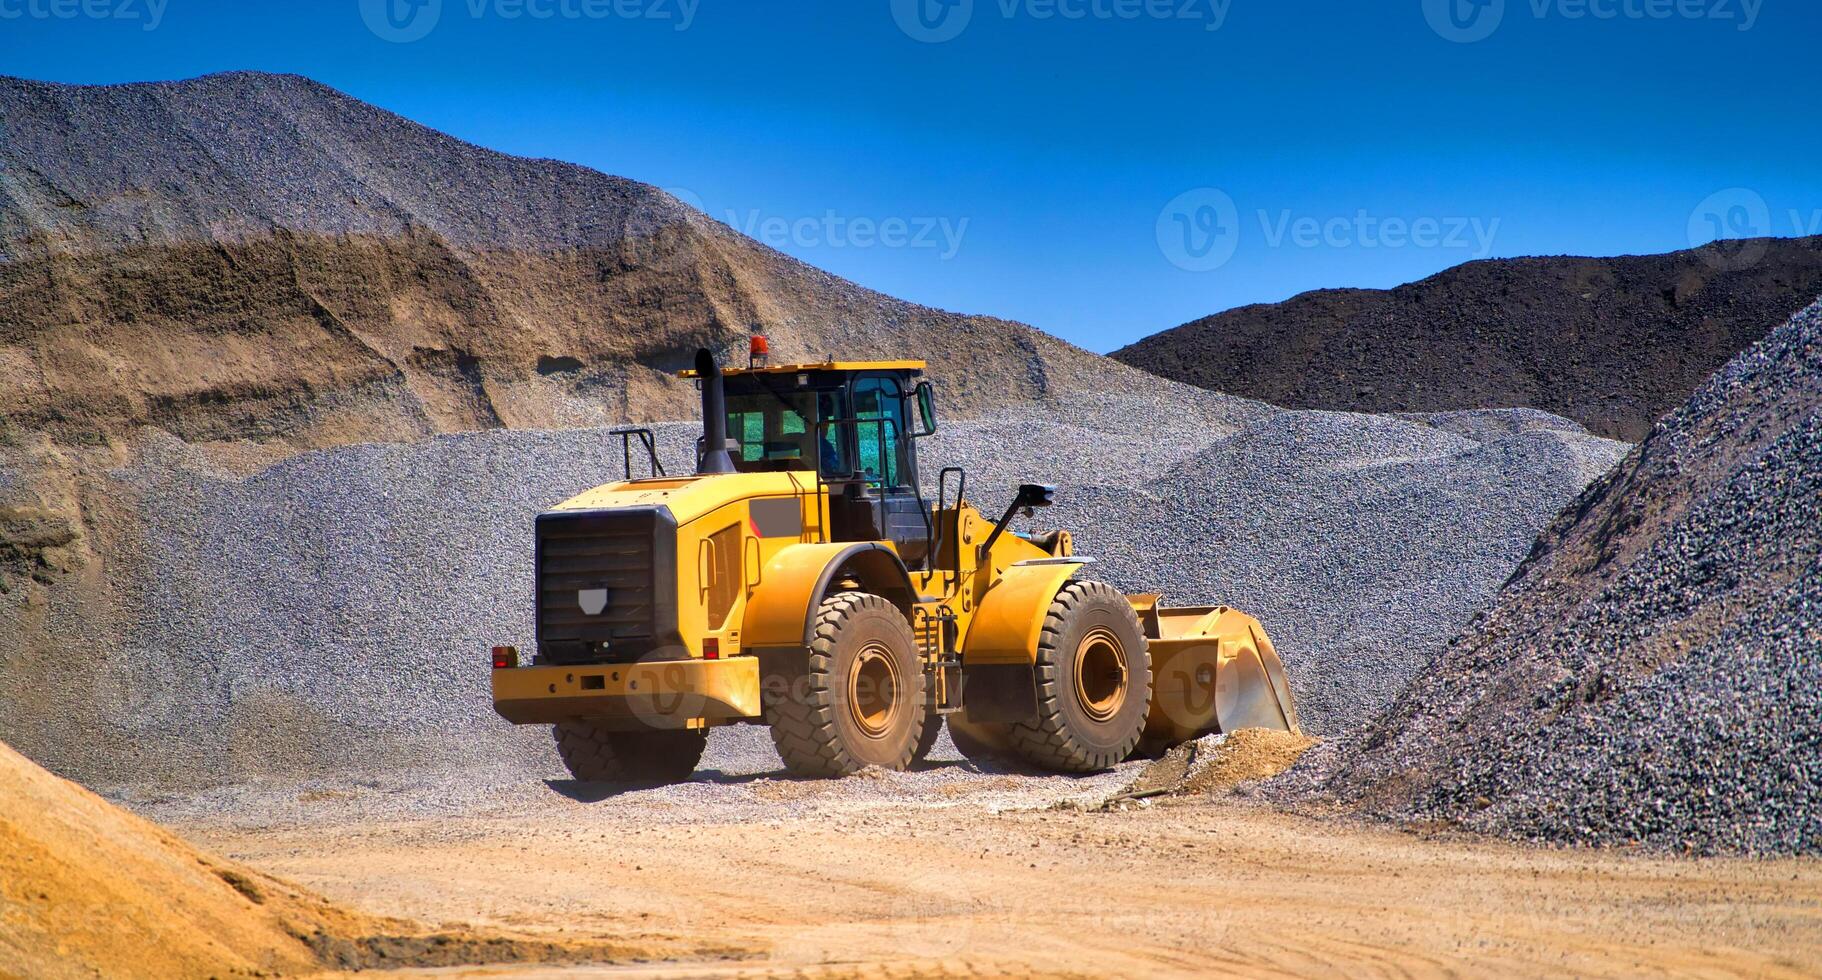 underhåll av gul grävmaskin på en konstruktion webbplats mot blå himmel. repeterar hjul lastare på sandlåda under schaktning Arbetar foto